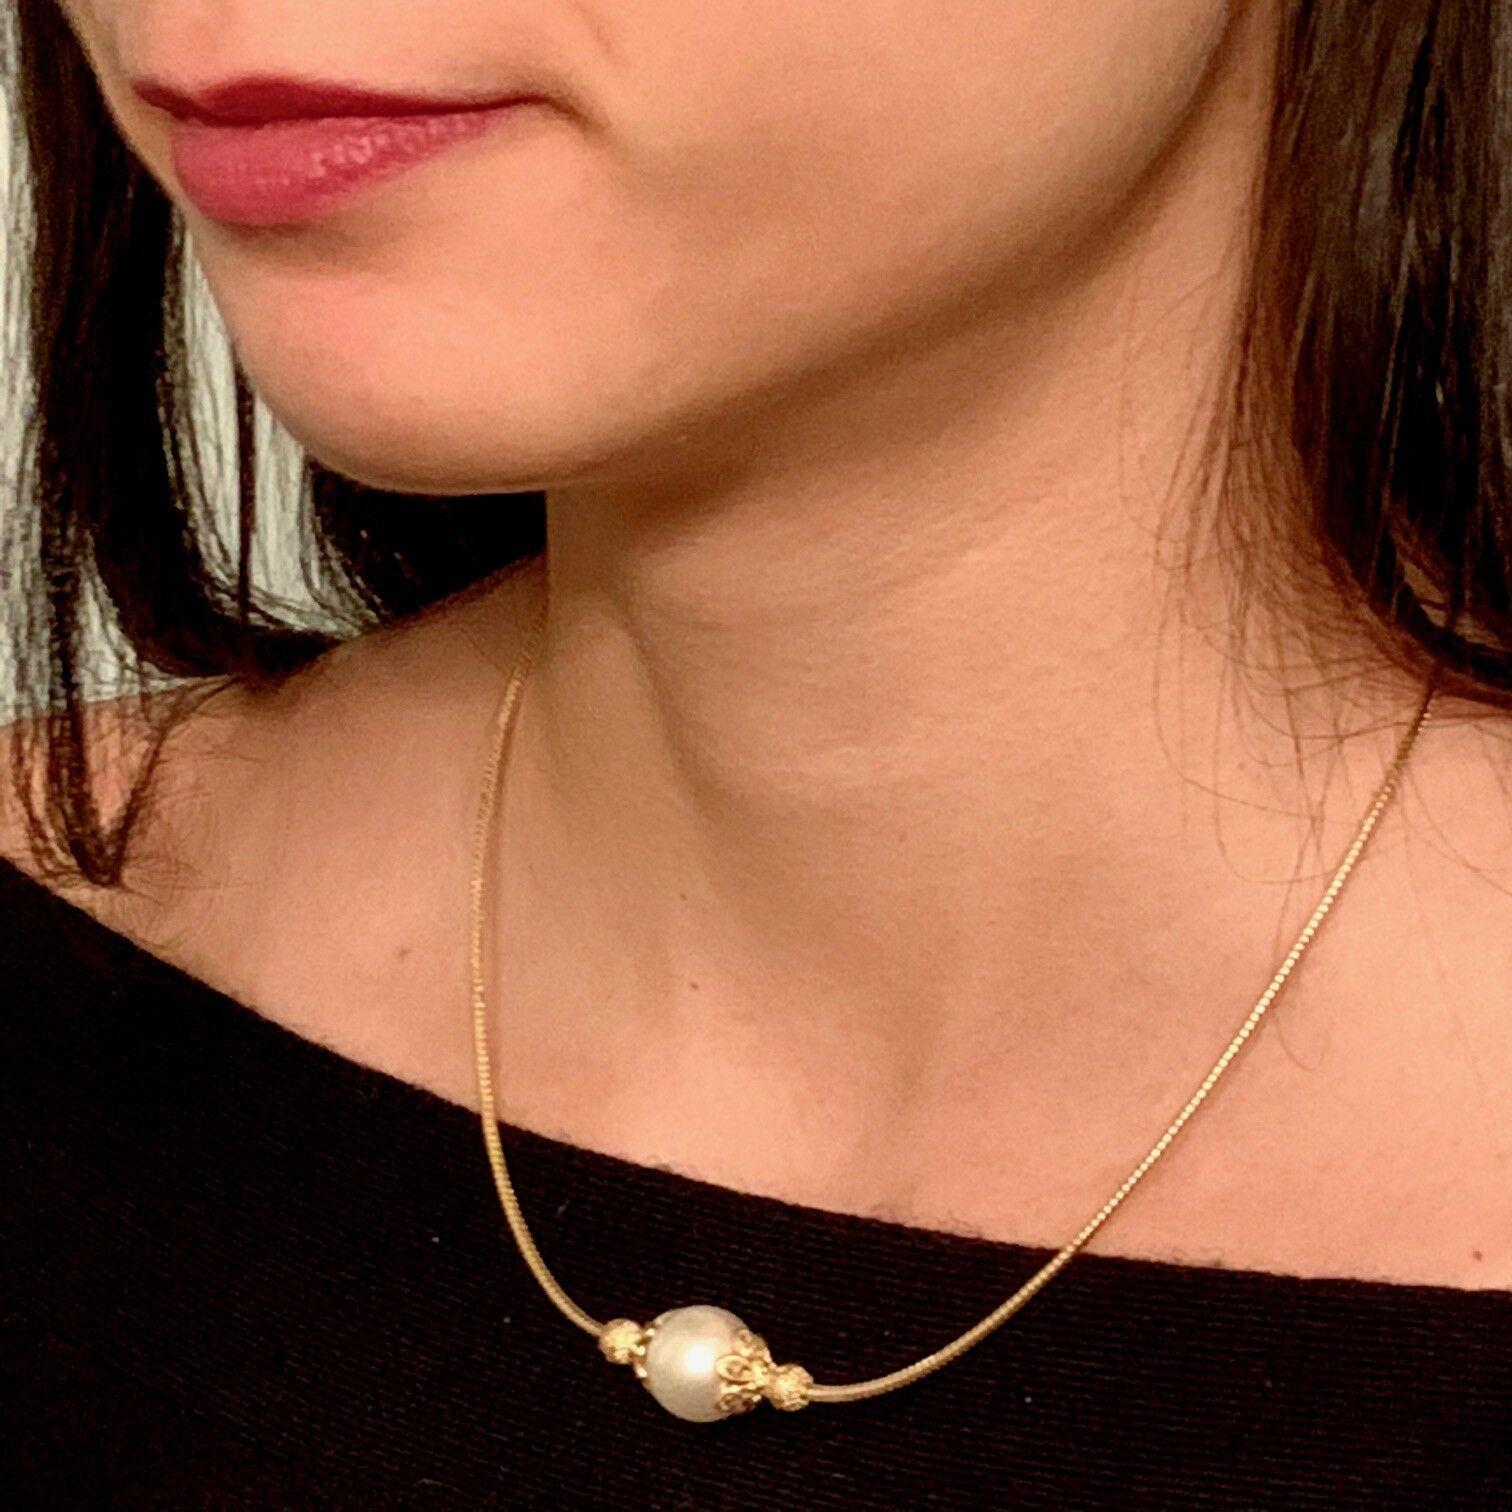 Feine Qualität Südsee Perle Diamant Halskette 12,88 mm 14k Gold Italien zertifiziert $1,950 820702

Dies ist ein einzigartiges, maßgeschneidertes, glamouröses Schmuckstück!

IN ITALIEN GEFERTIGT

Nichts sagt mehr 